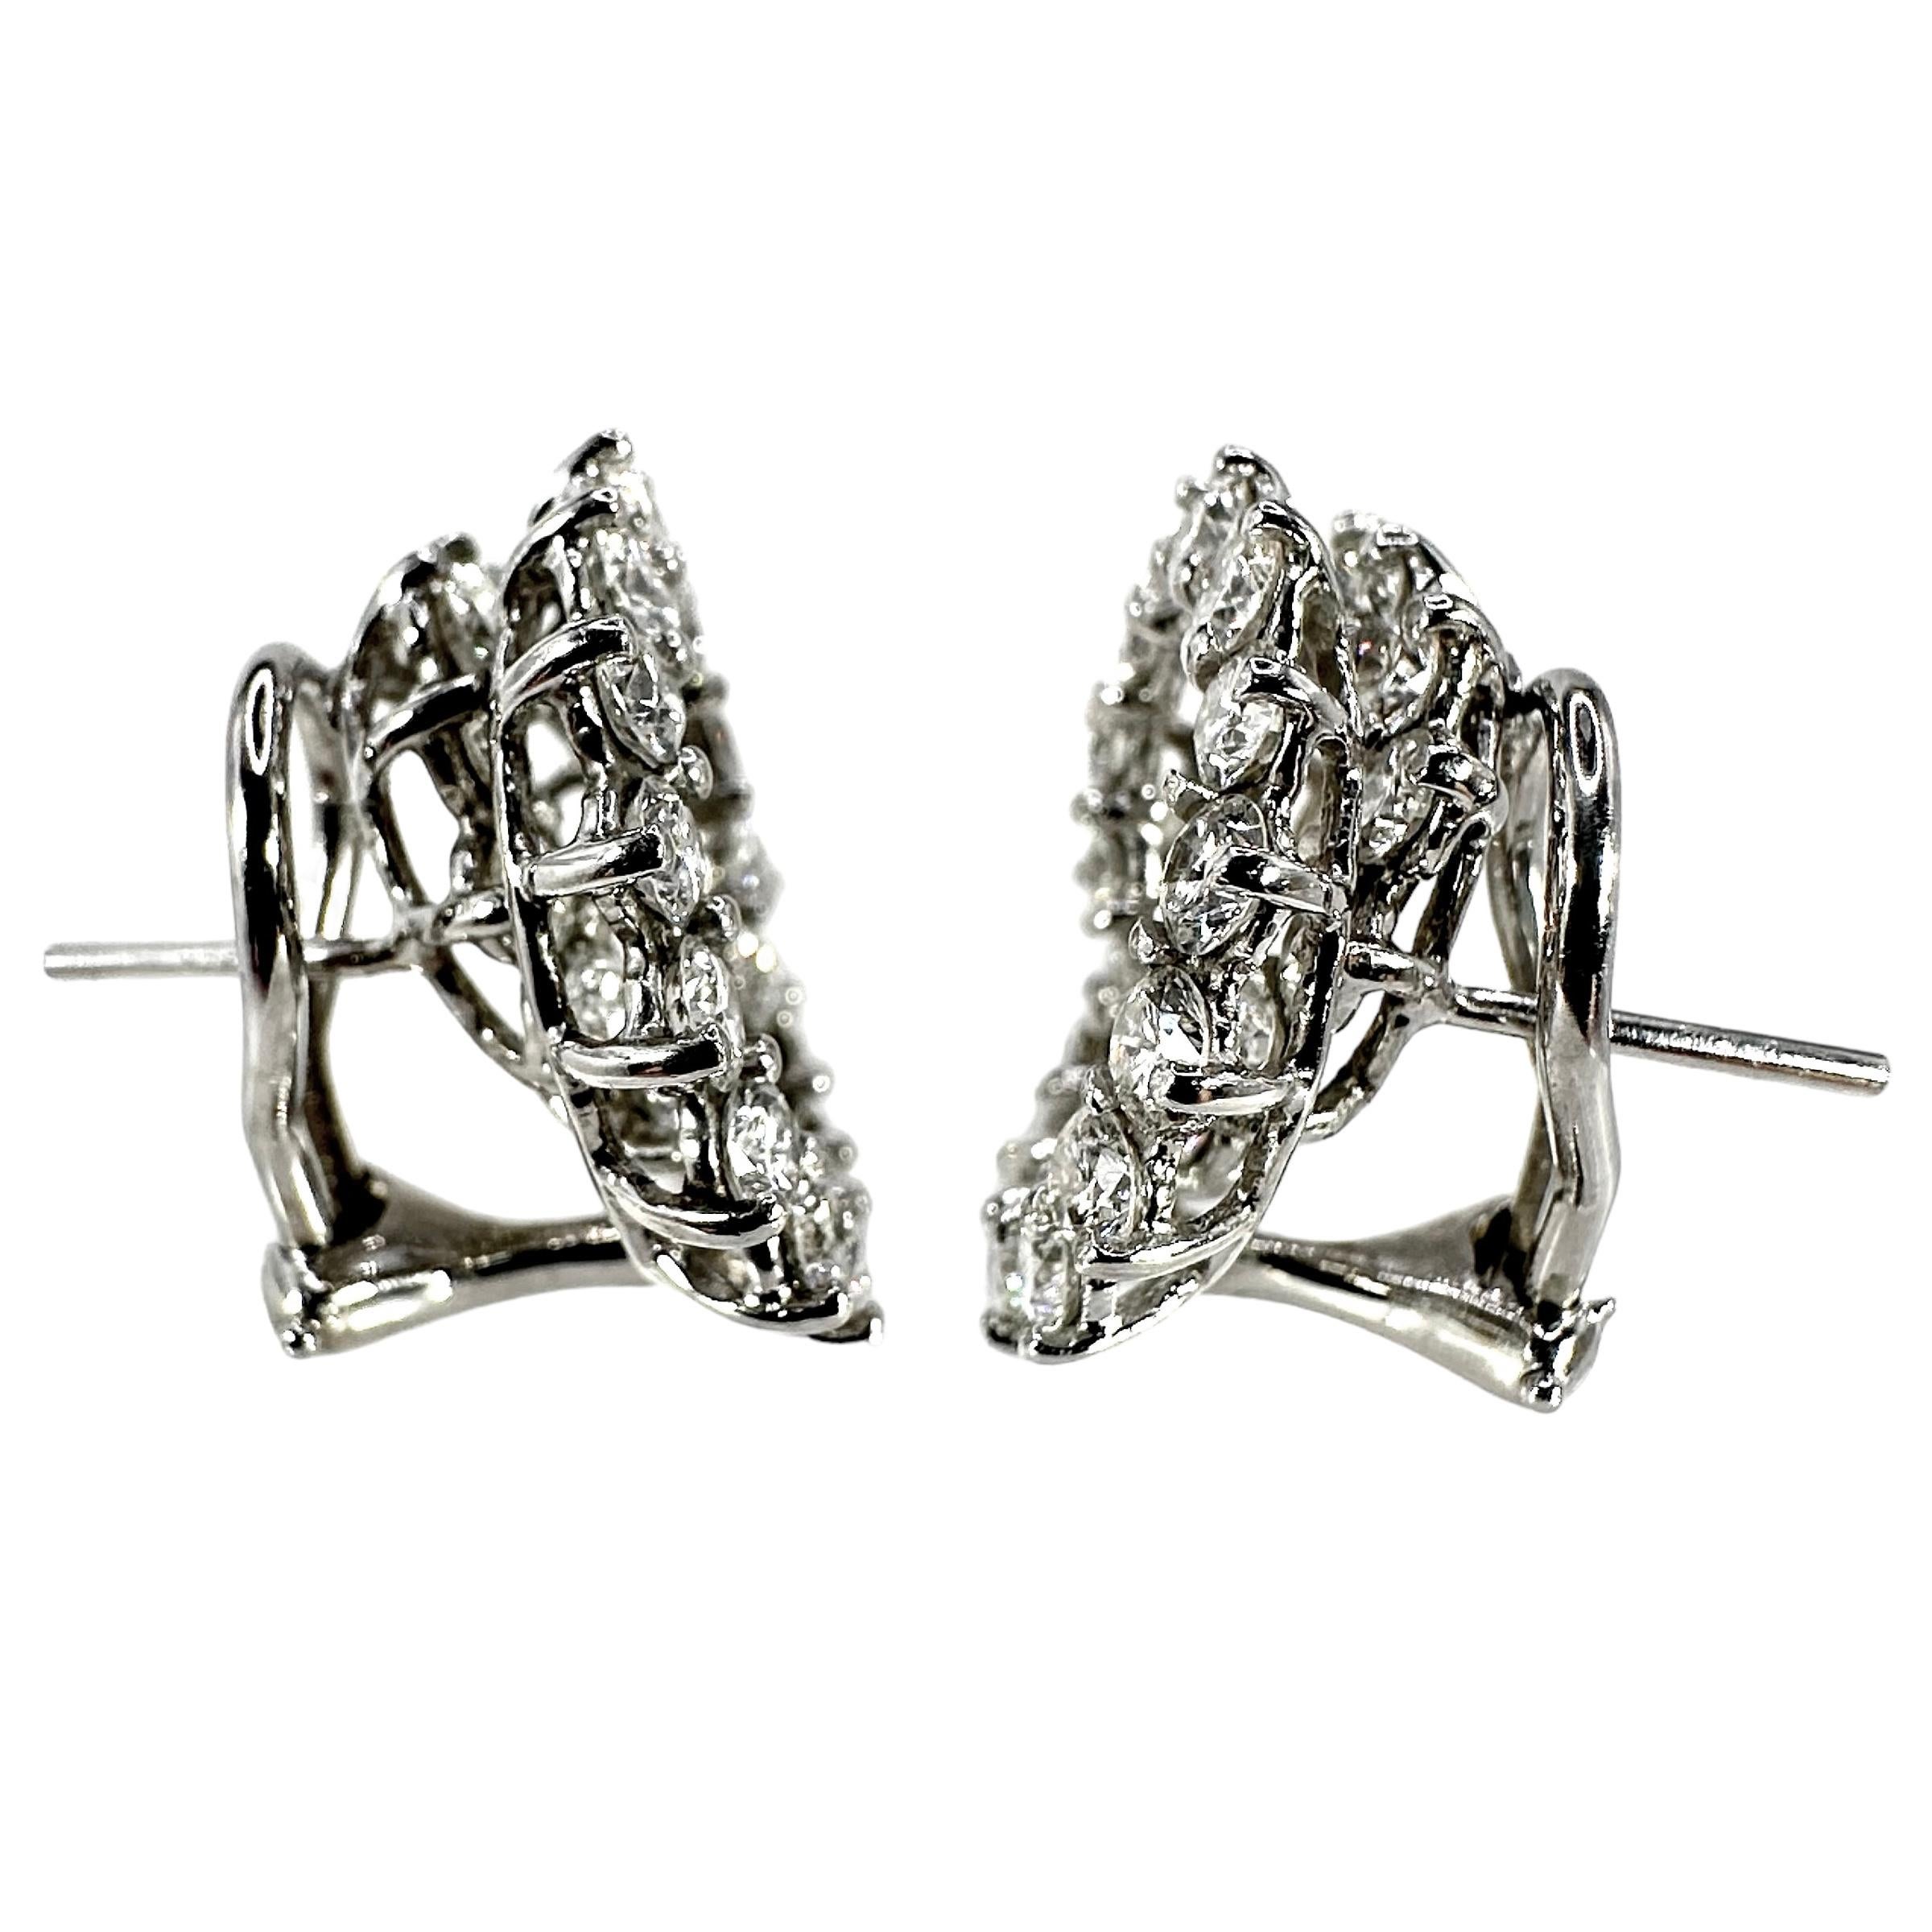 Diese  Die ikonischen Vintage-Ohrringe aus Platin und Diamanten wurden von der bekannten Schmuckdesignerin Angela Cummings im Auftrag von Tiffany and Company entworfen. Das aufregende Design ist inzwischen in Rente gegangen, aber ihr genialer Stil